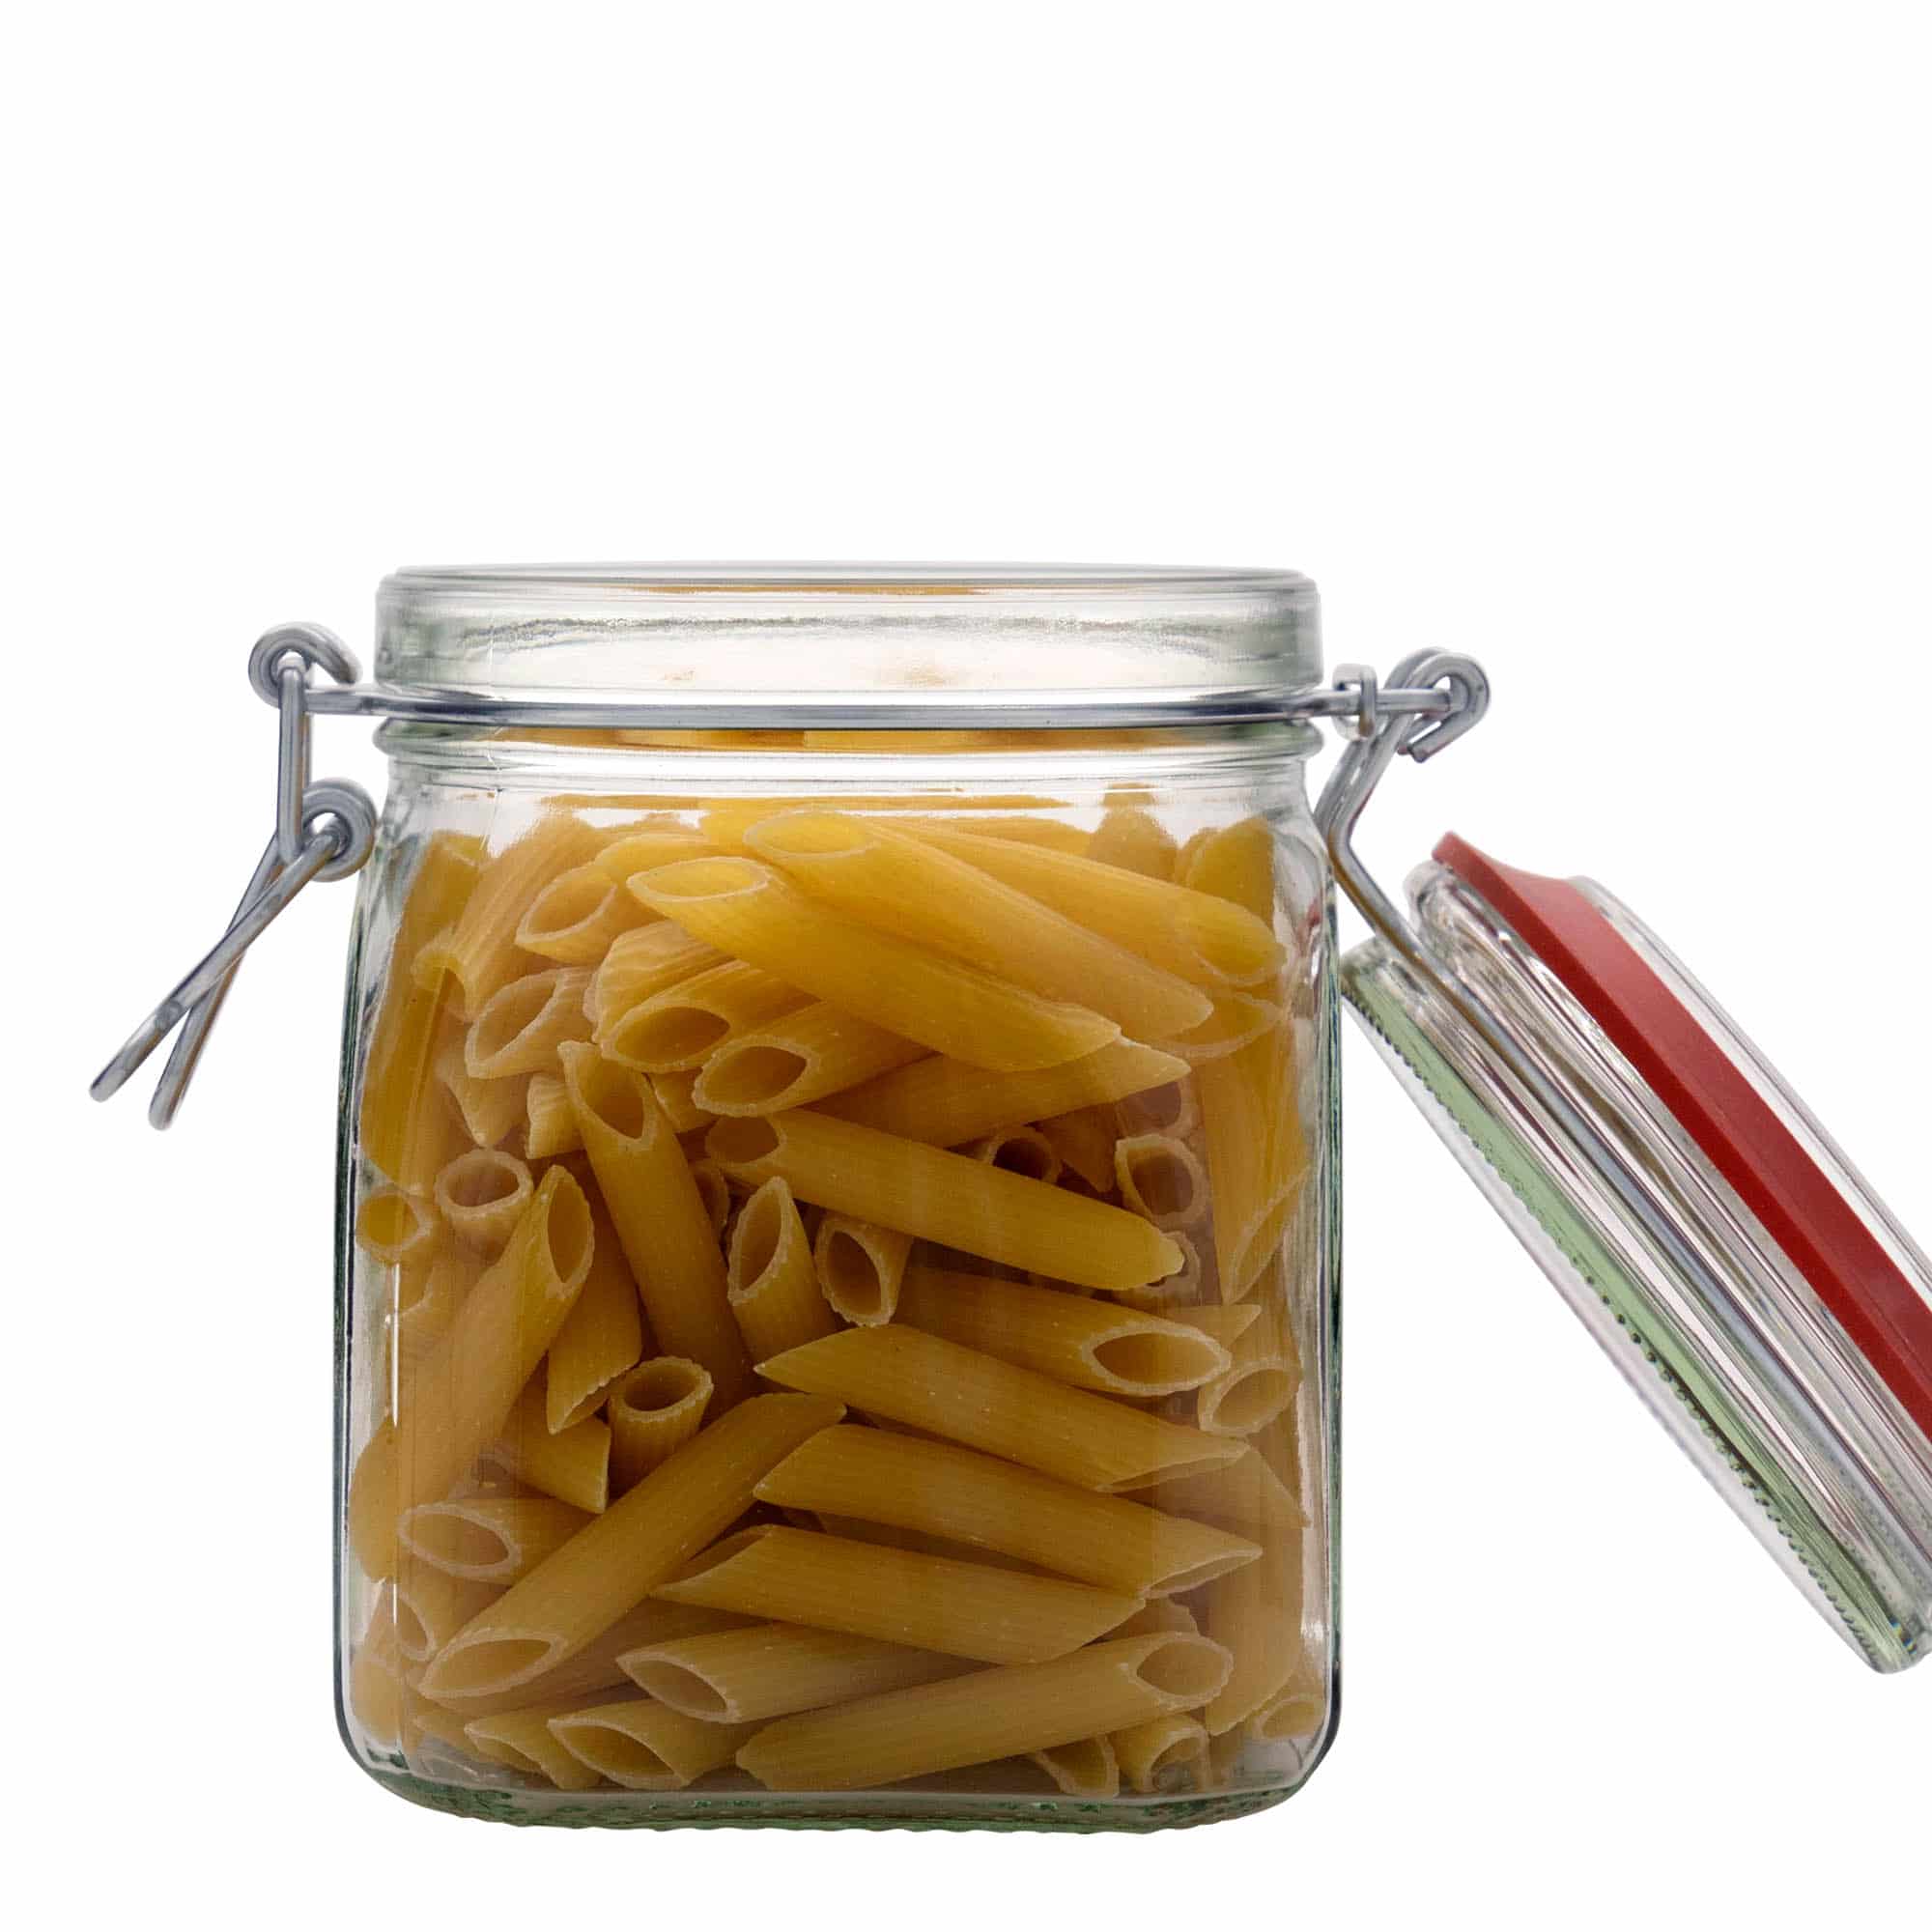 900 ml clip top jar, square, closure: clip top